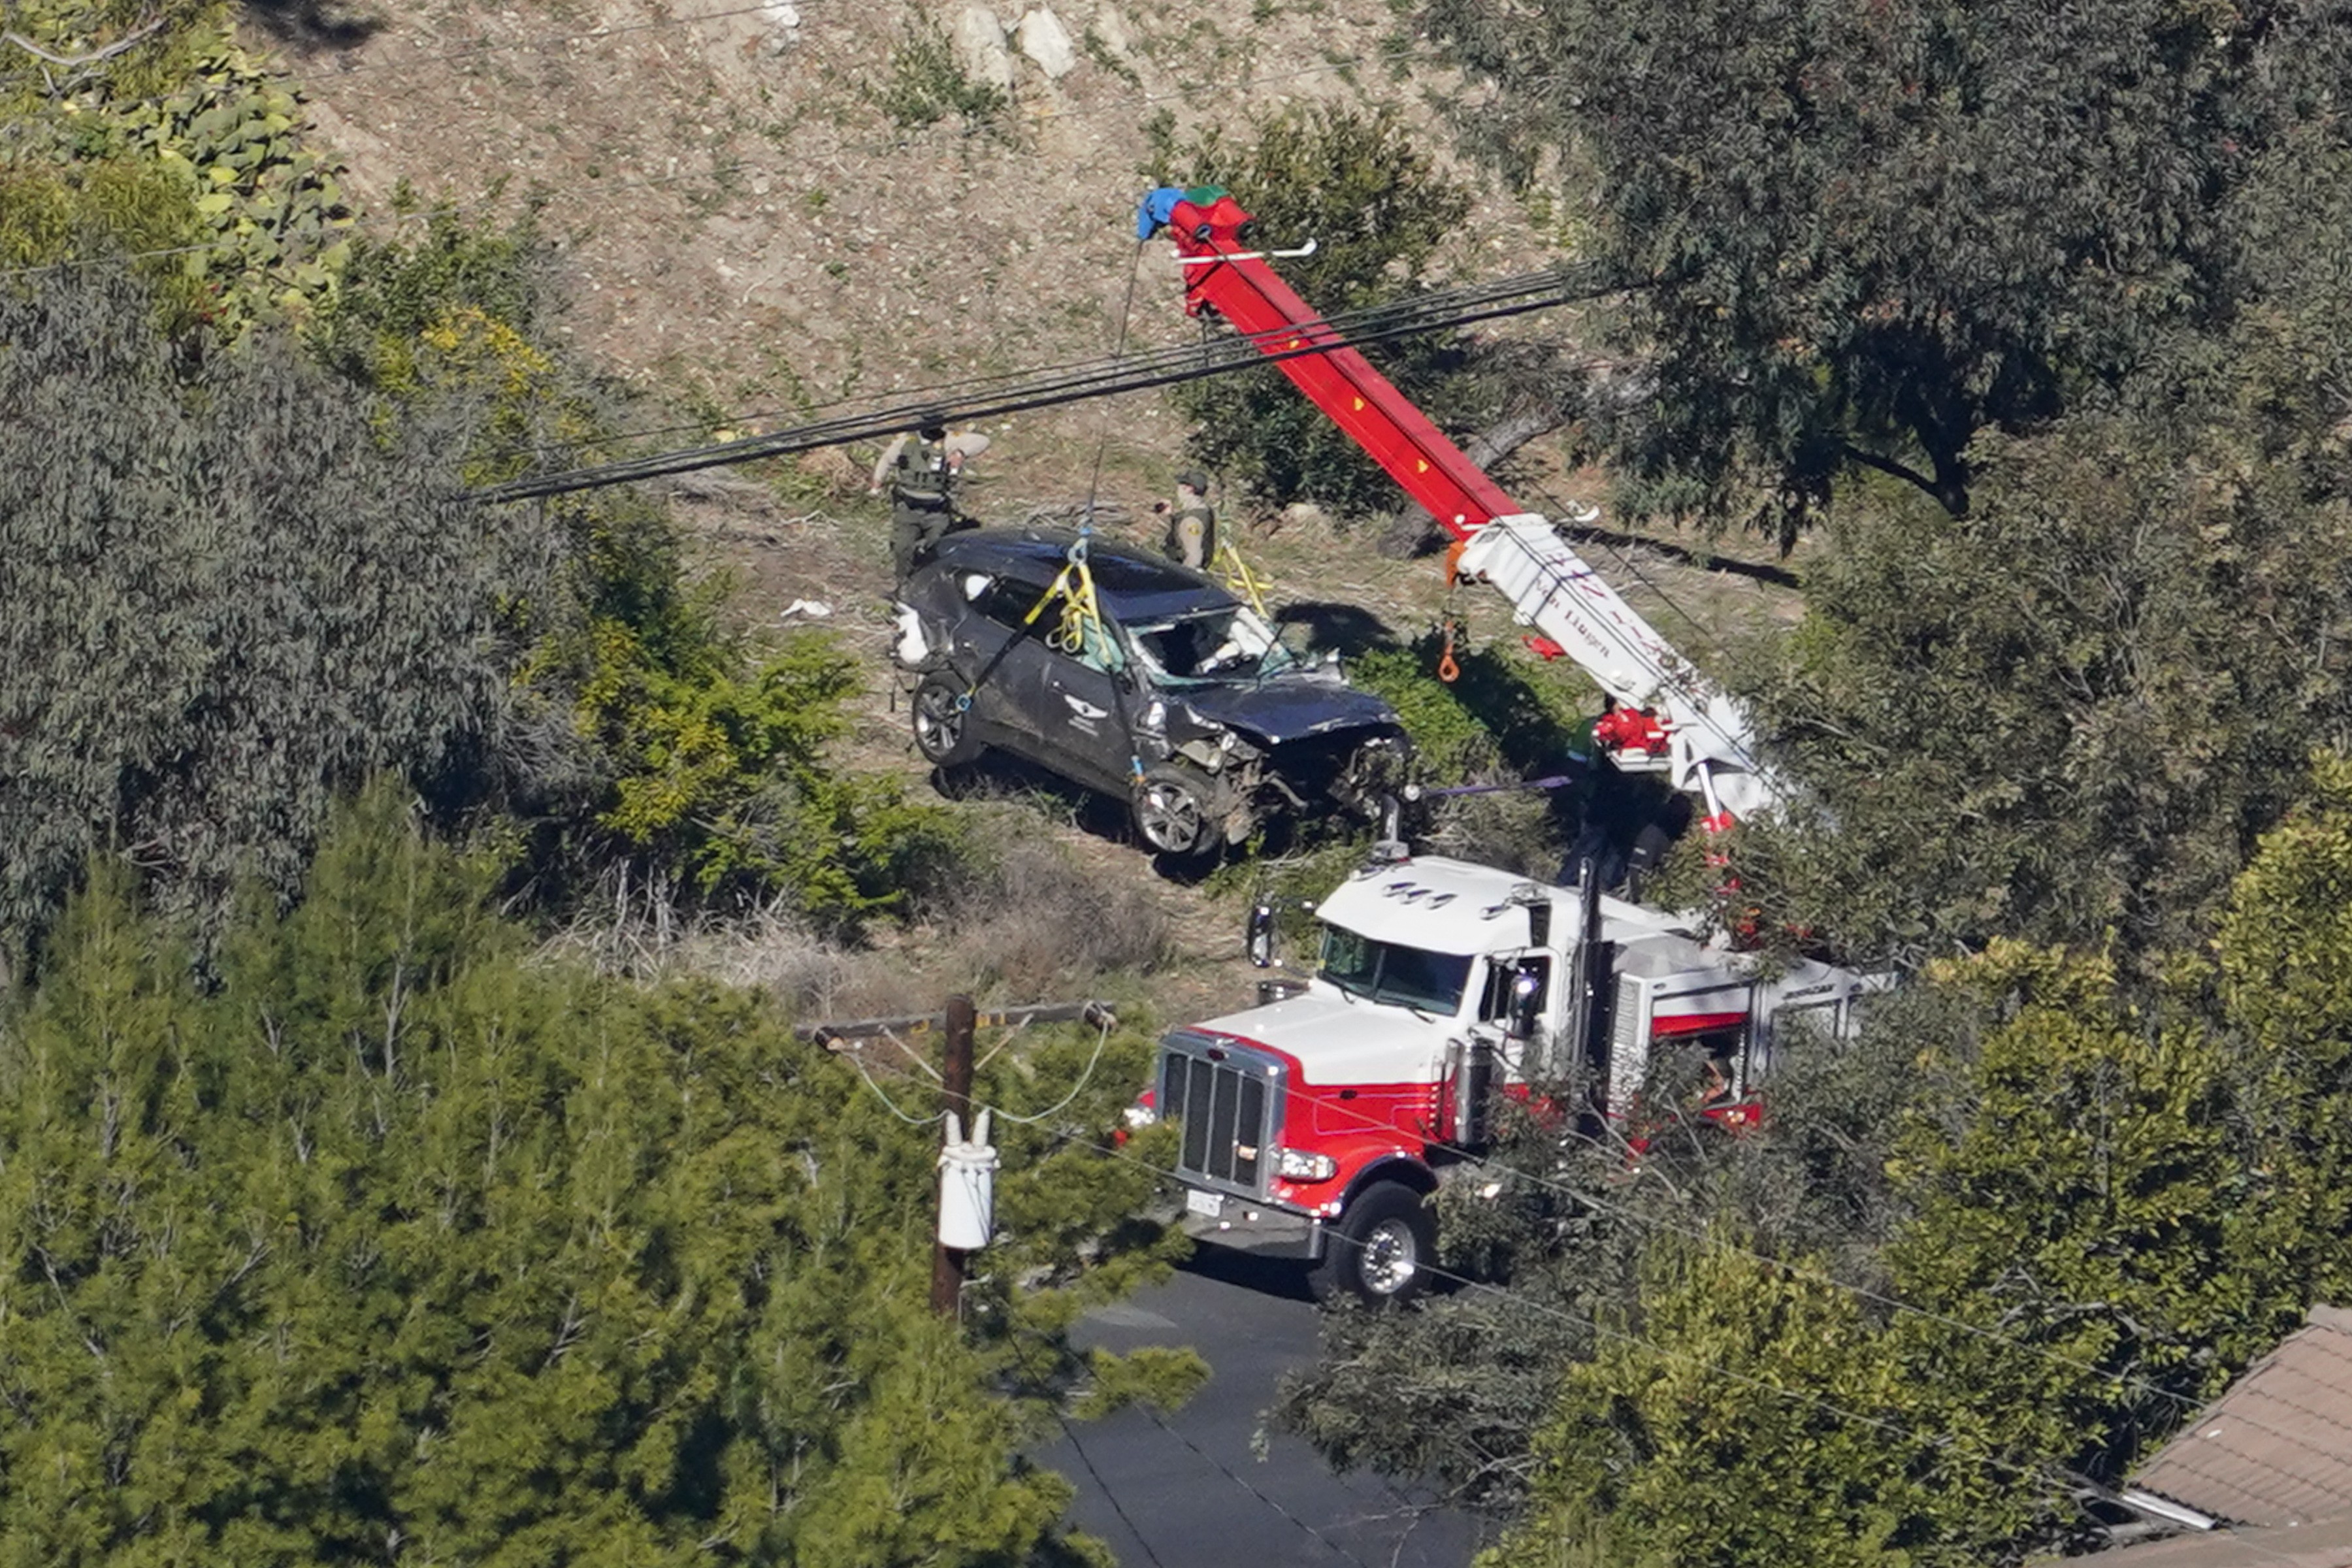 Tiger Woods sofreu acidente de carro no sul da Califórnia e teve que ser retirado das ferragens do veículo (Foto: Getty Images)